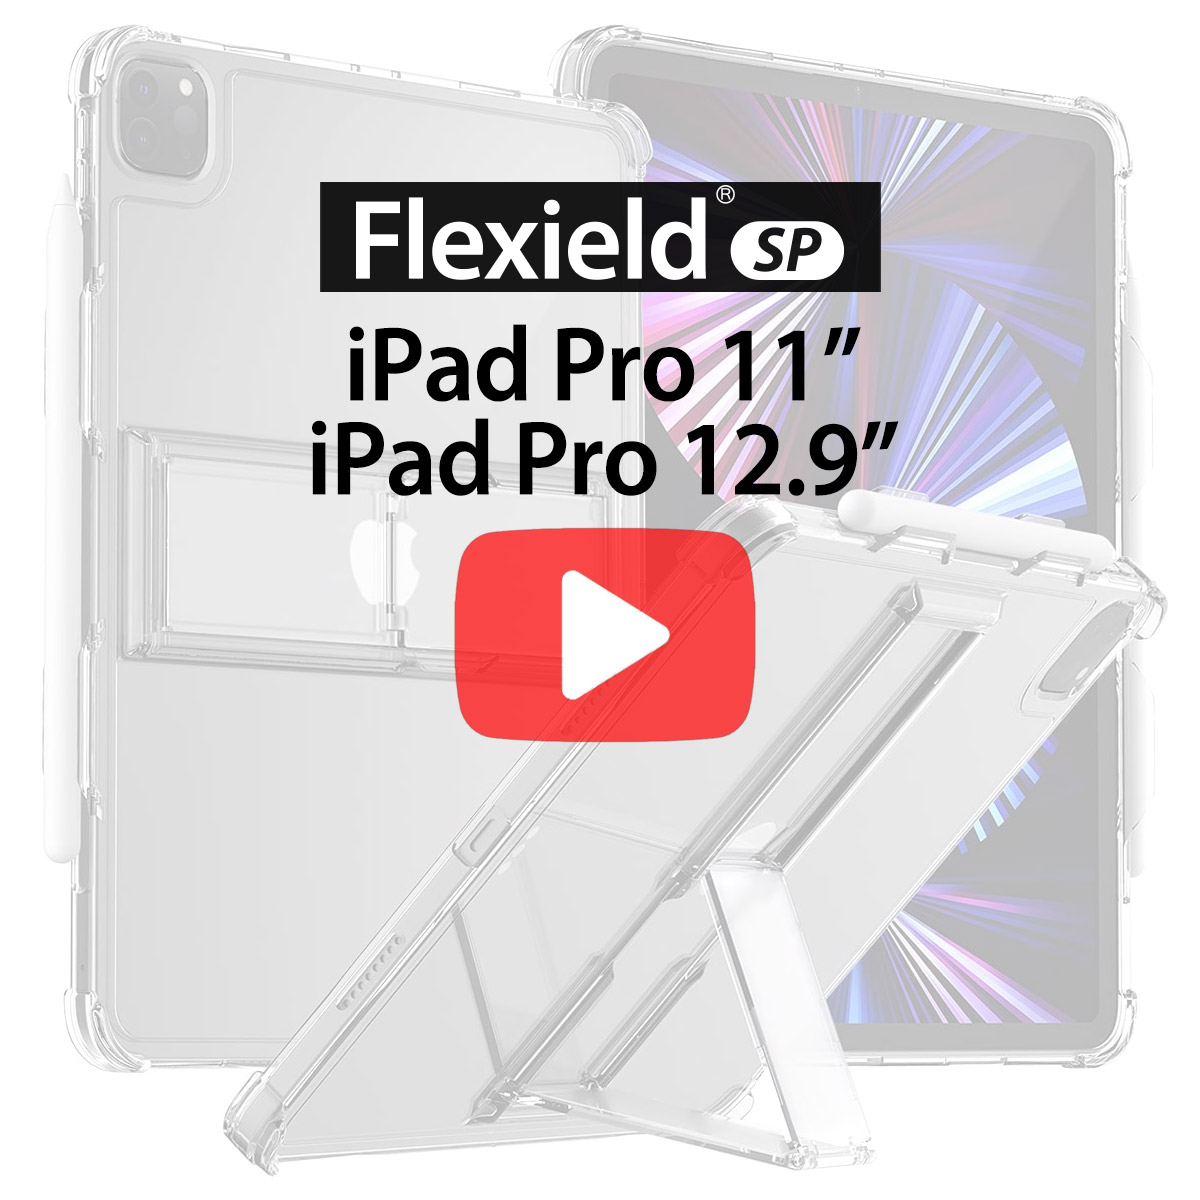 [iPad Pro 11&quot; / iPad Pro 12.9&quot;] Flexield SP